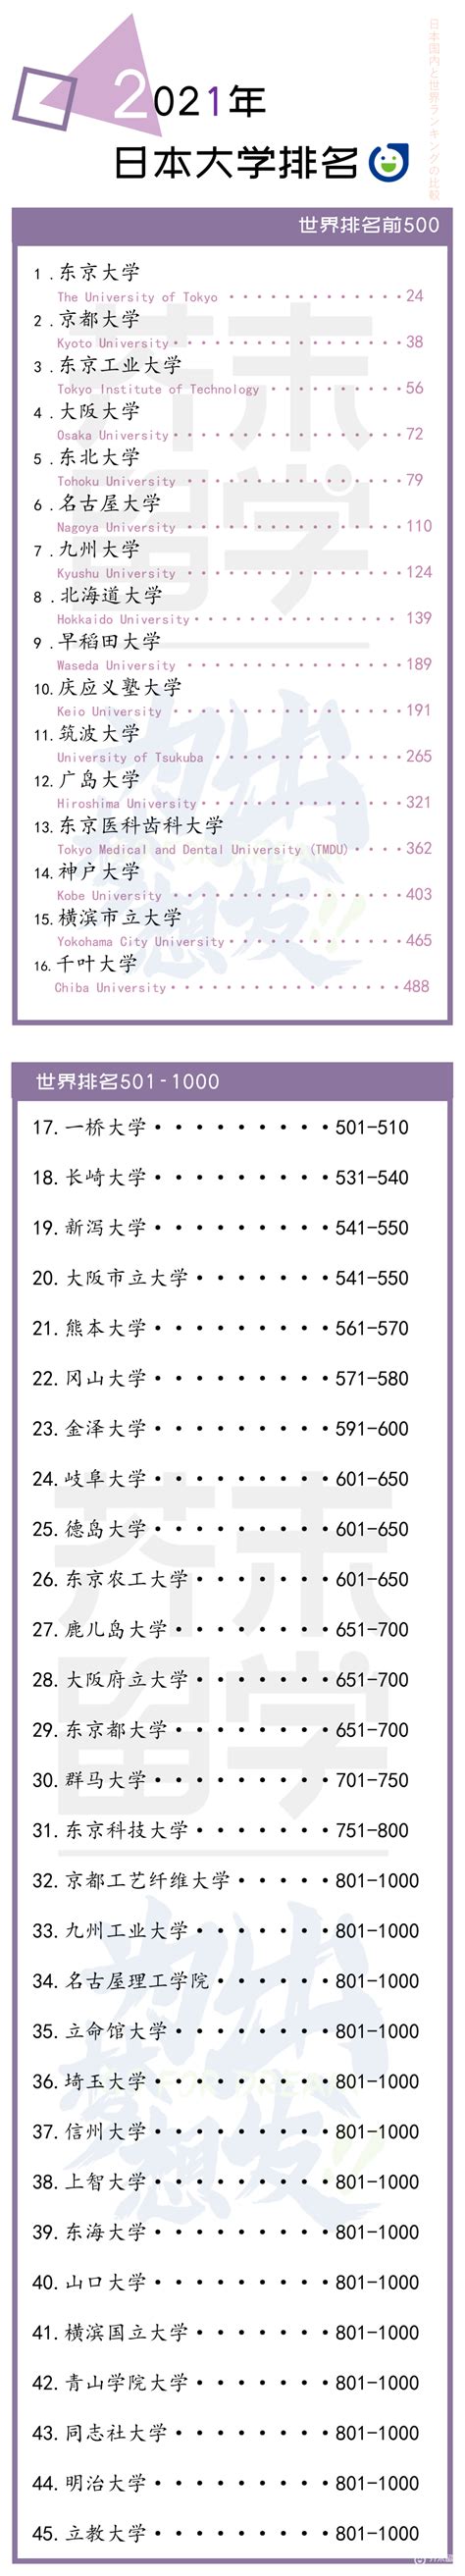 2021年QS大学排名日本篇 早稻田庆应排名上升！前500学校减少！